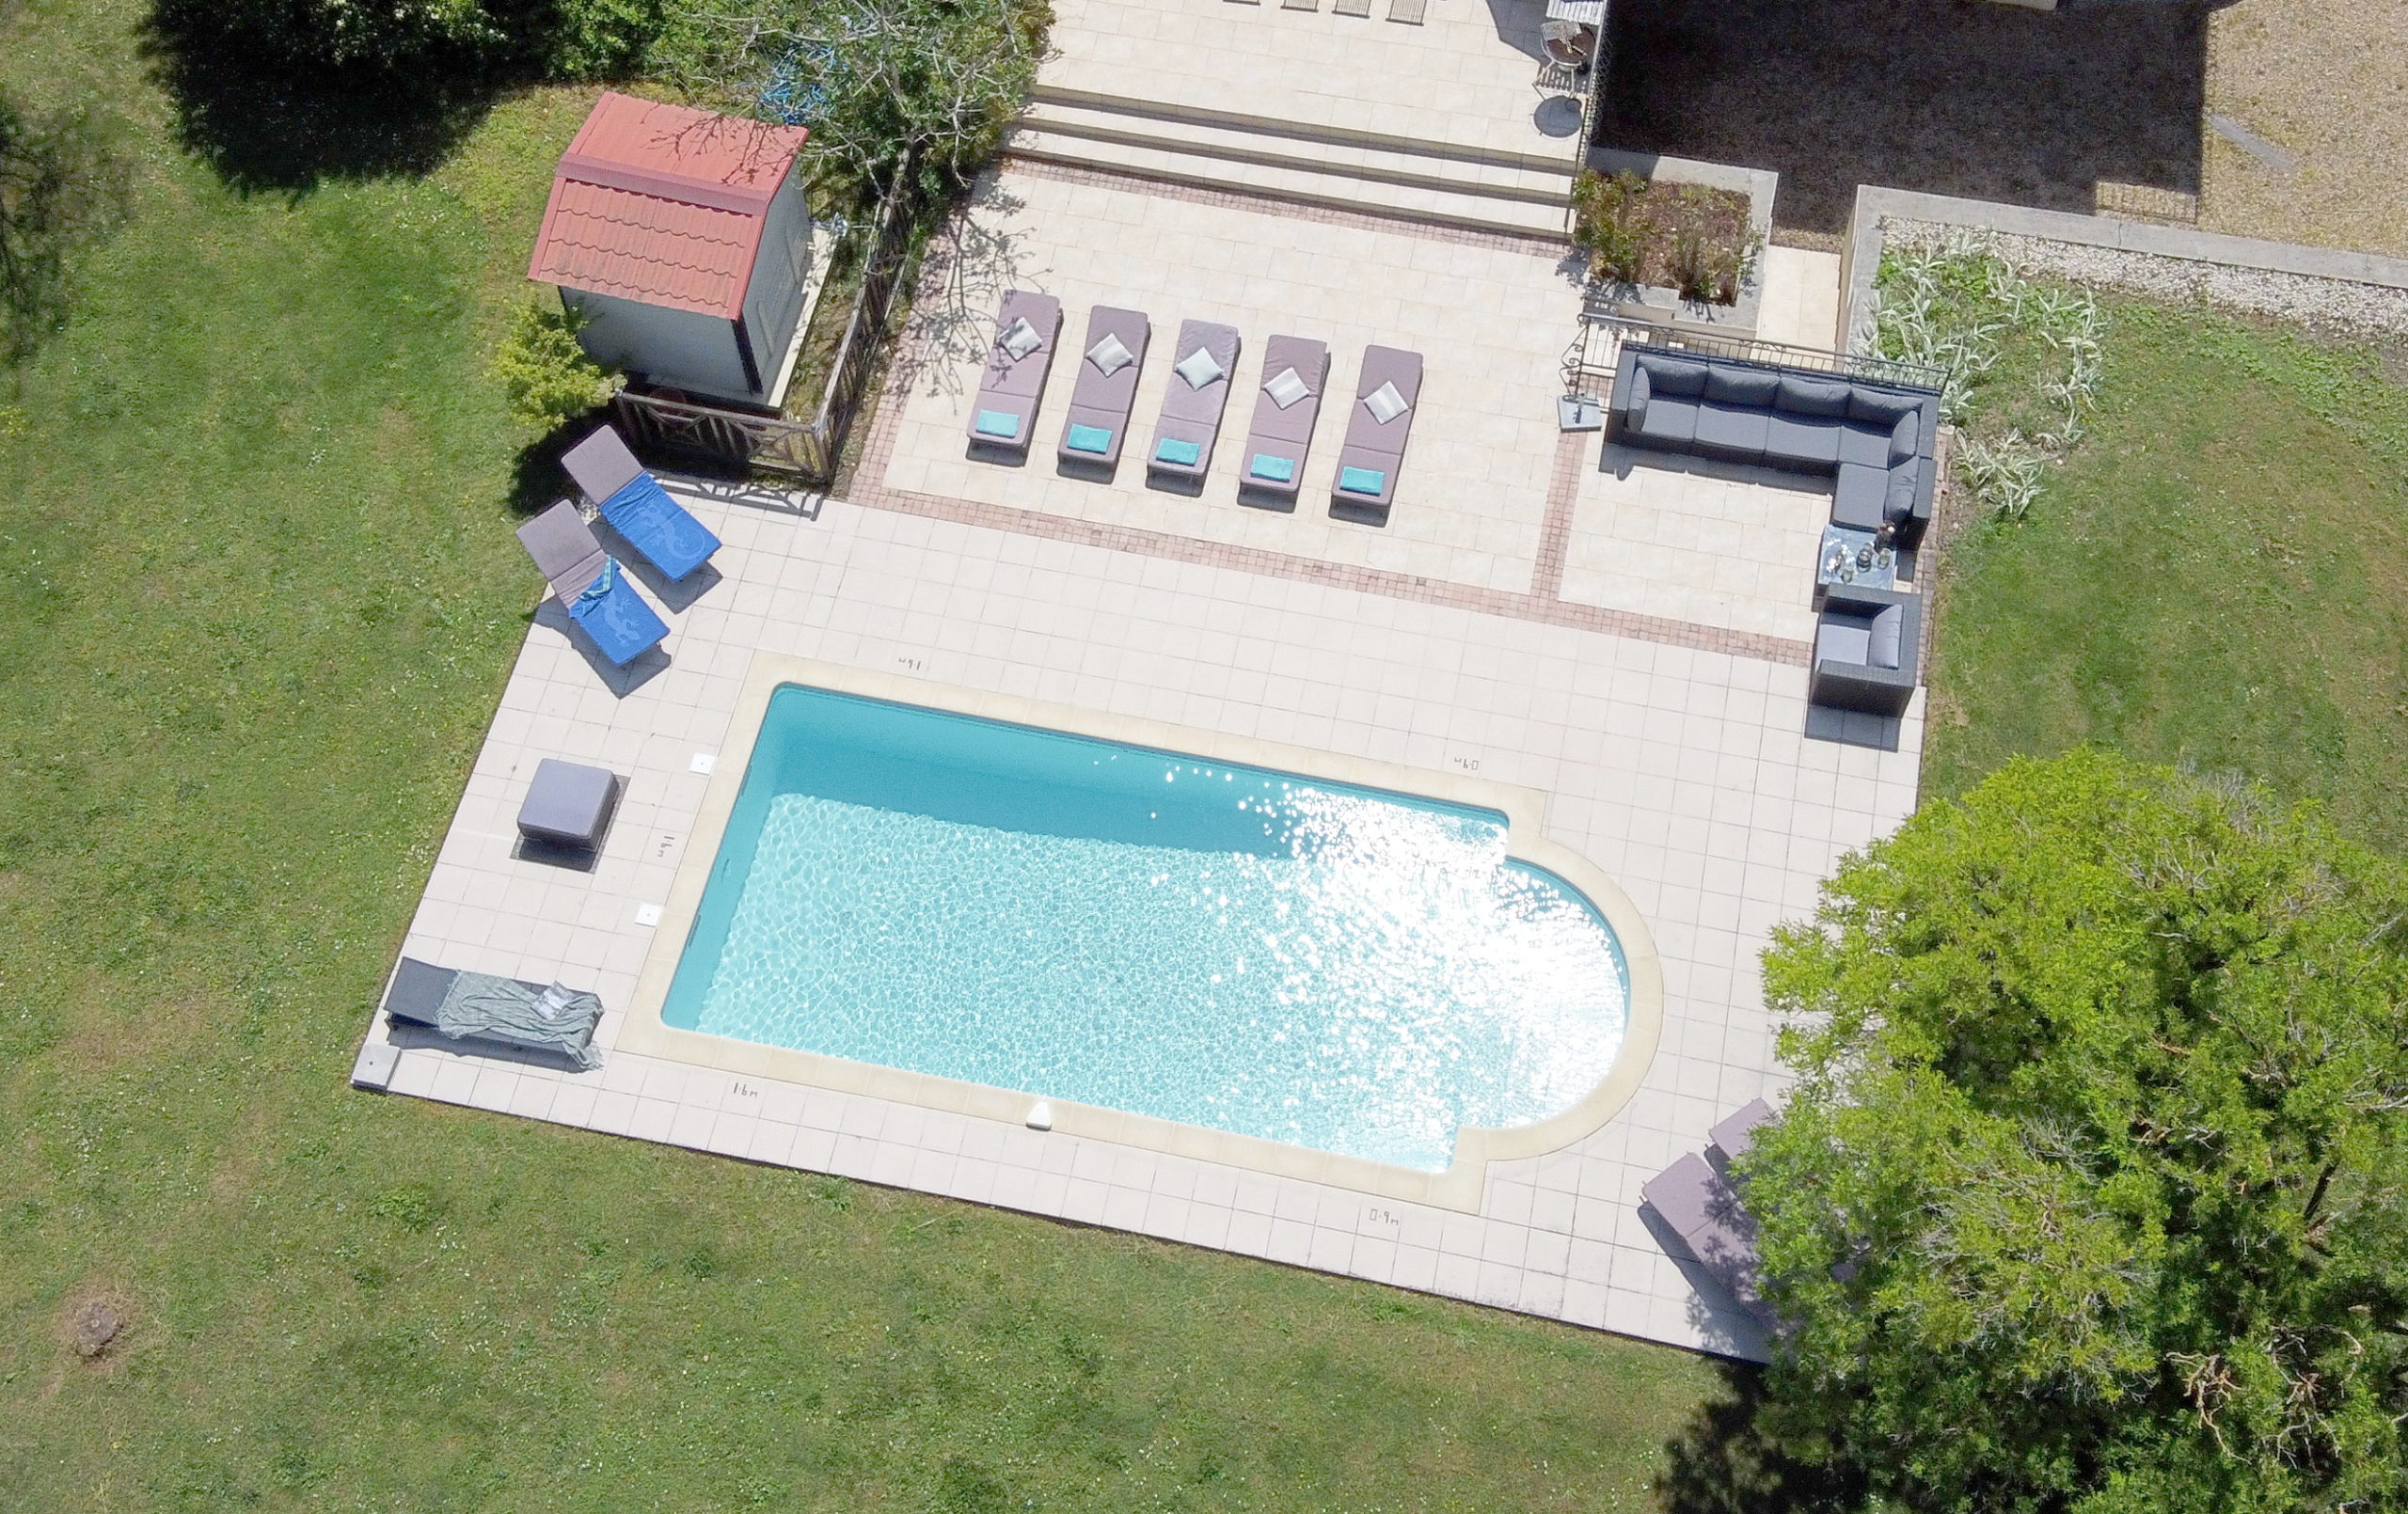 Maison cinquante - villa vacances fources piscine prive 12 pers- gascogne collection